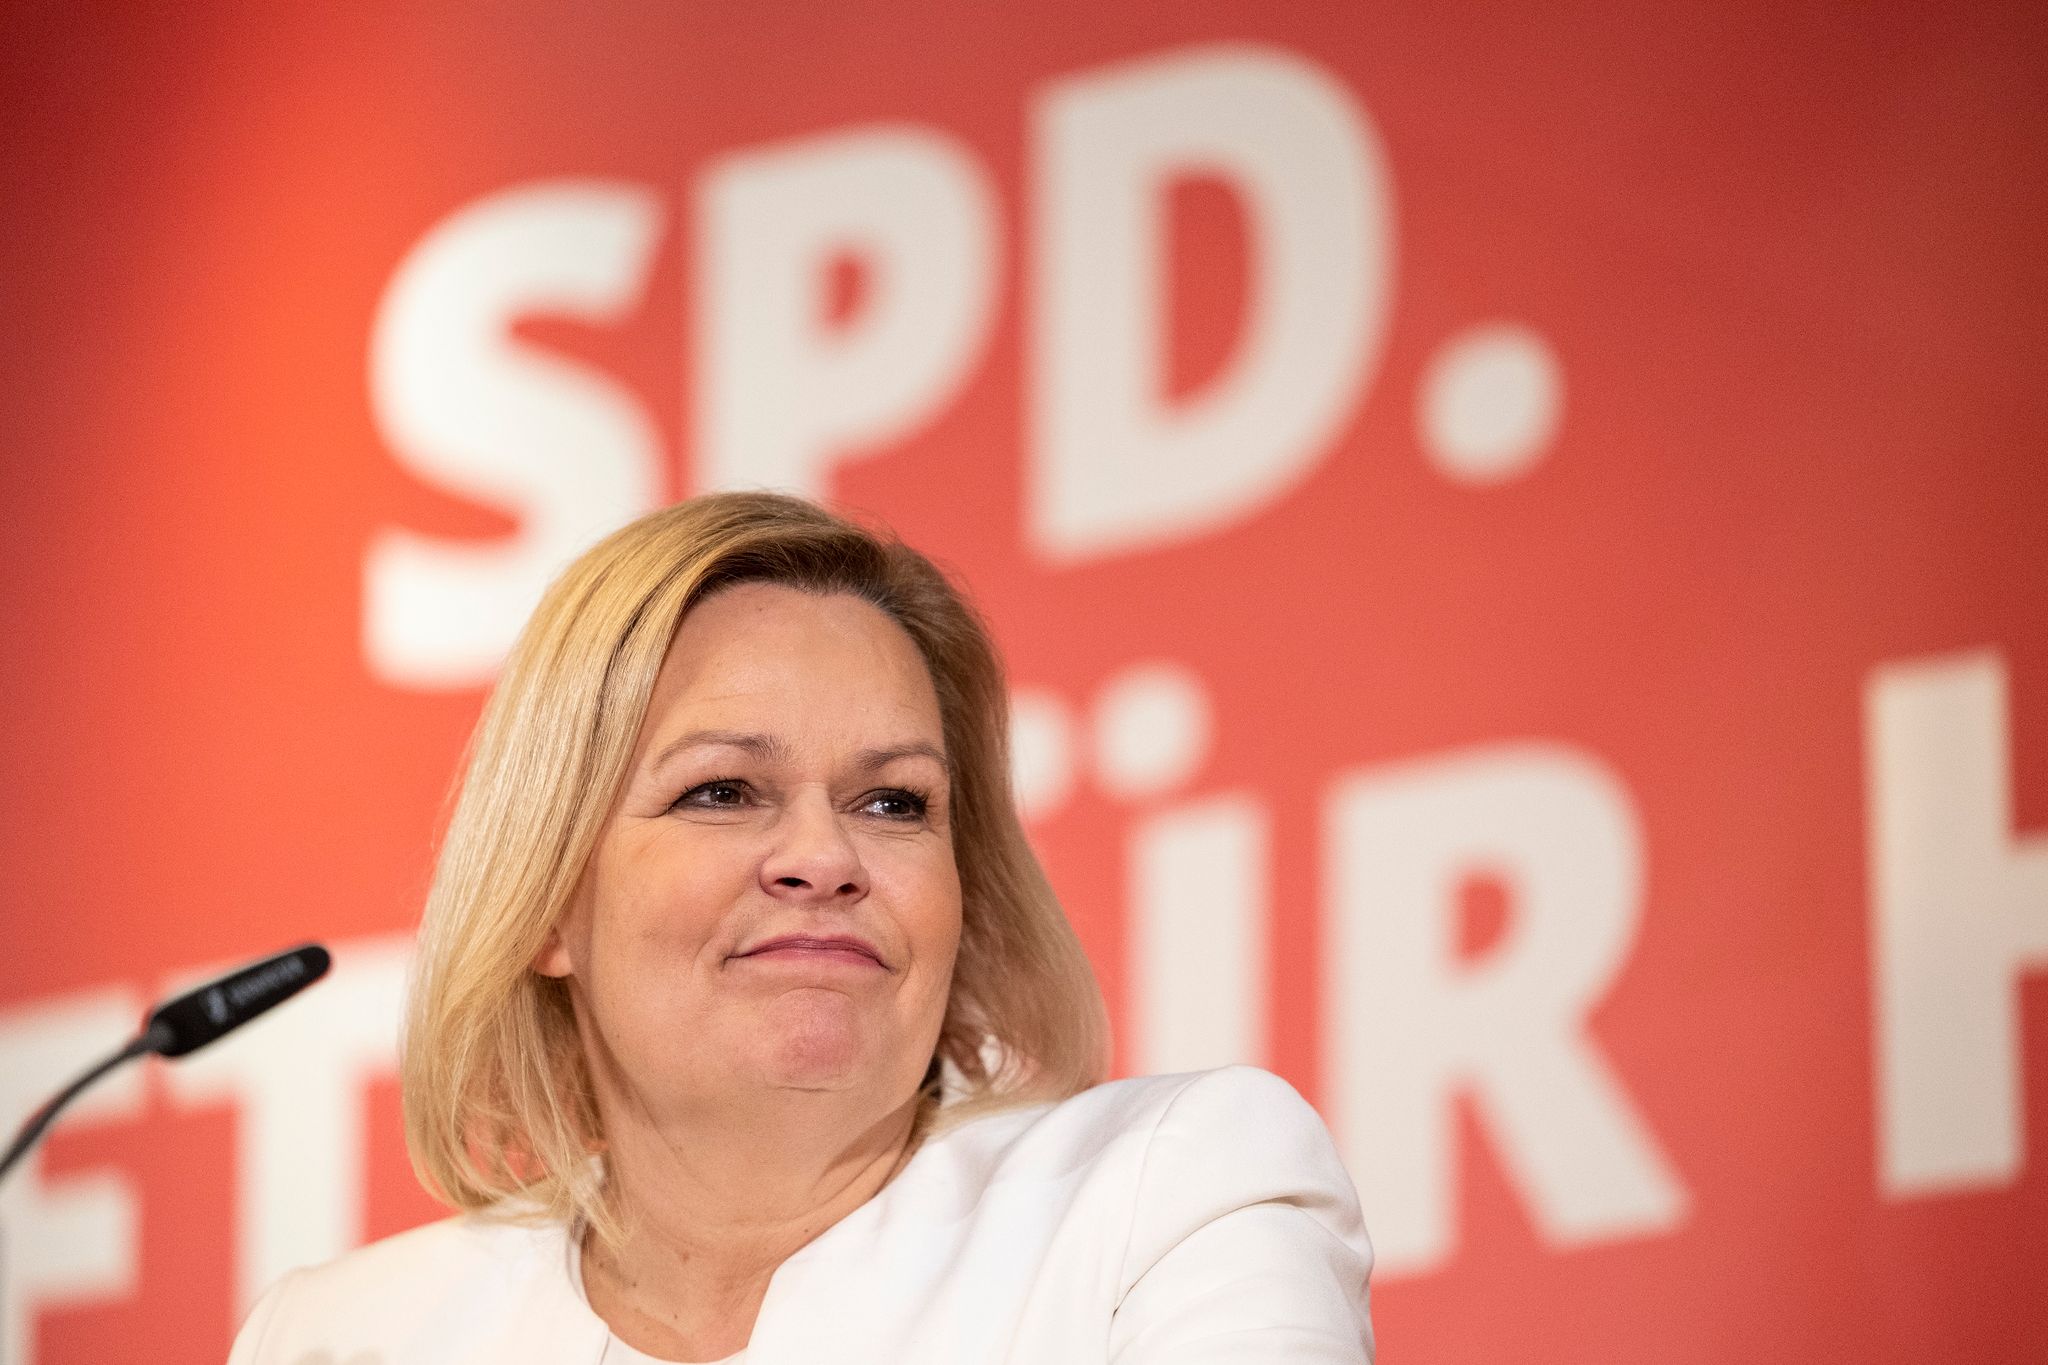 Innenministerin Nancy Faeser(SPD) steht als erste Frau in der Geschichte der Bundesrepublik an der Spitze des Bundesinnenministeriums. (© Hannes P. Albert/dpa)